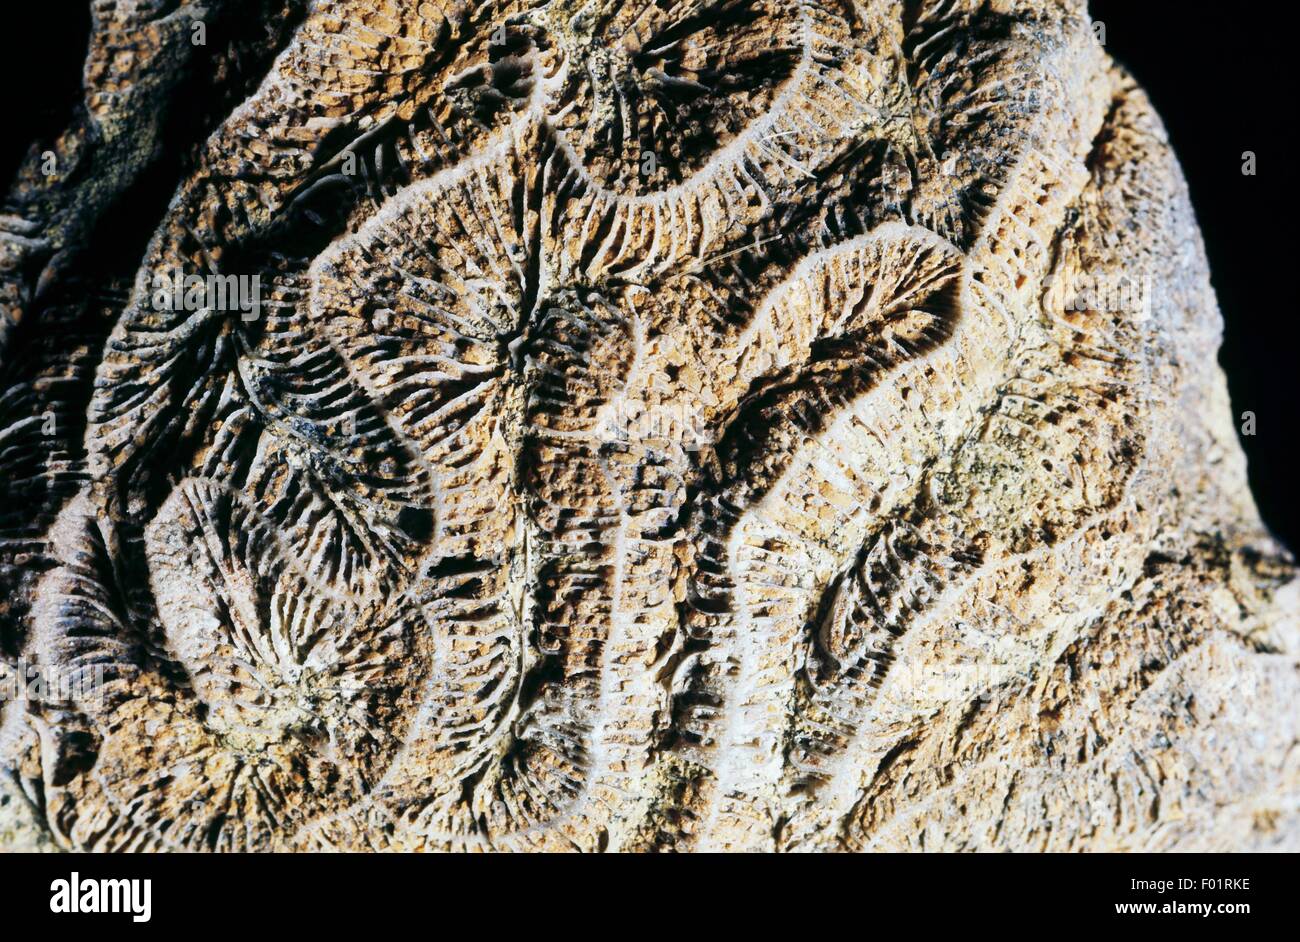 Serpeggianti Anthozoa fossili, Oligocene Epoch, Vicenza, Italia. Foto Stock